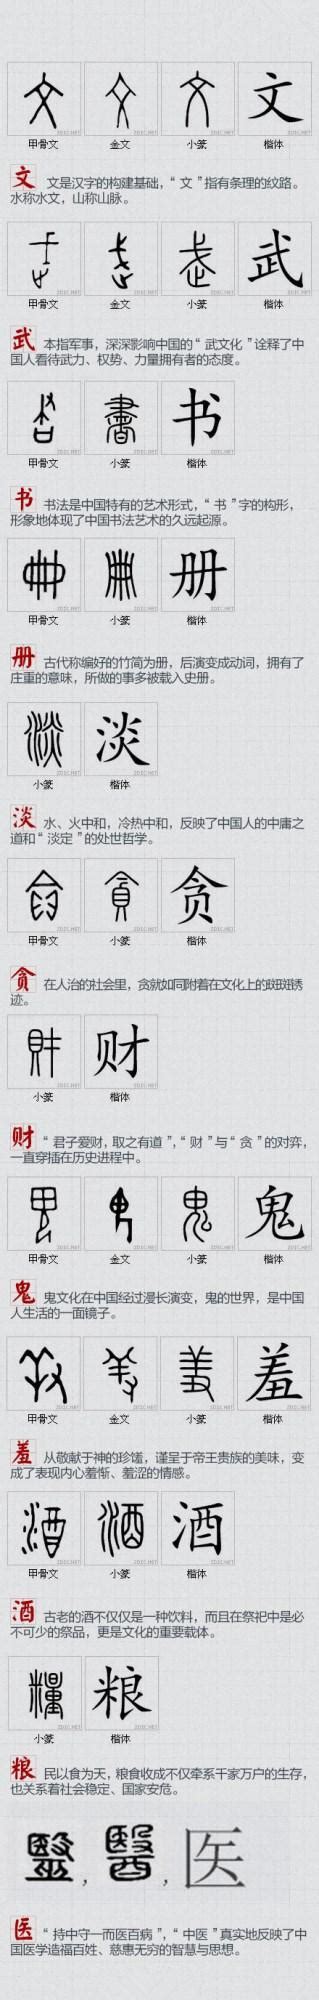 汉字的演变过程_word文档在线阅读与下载_无忧文档